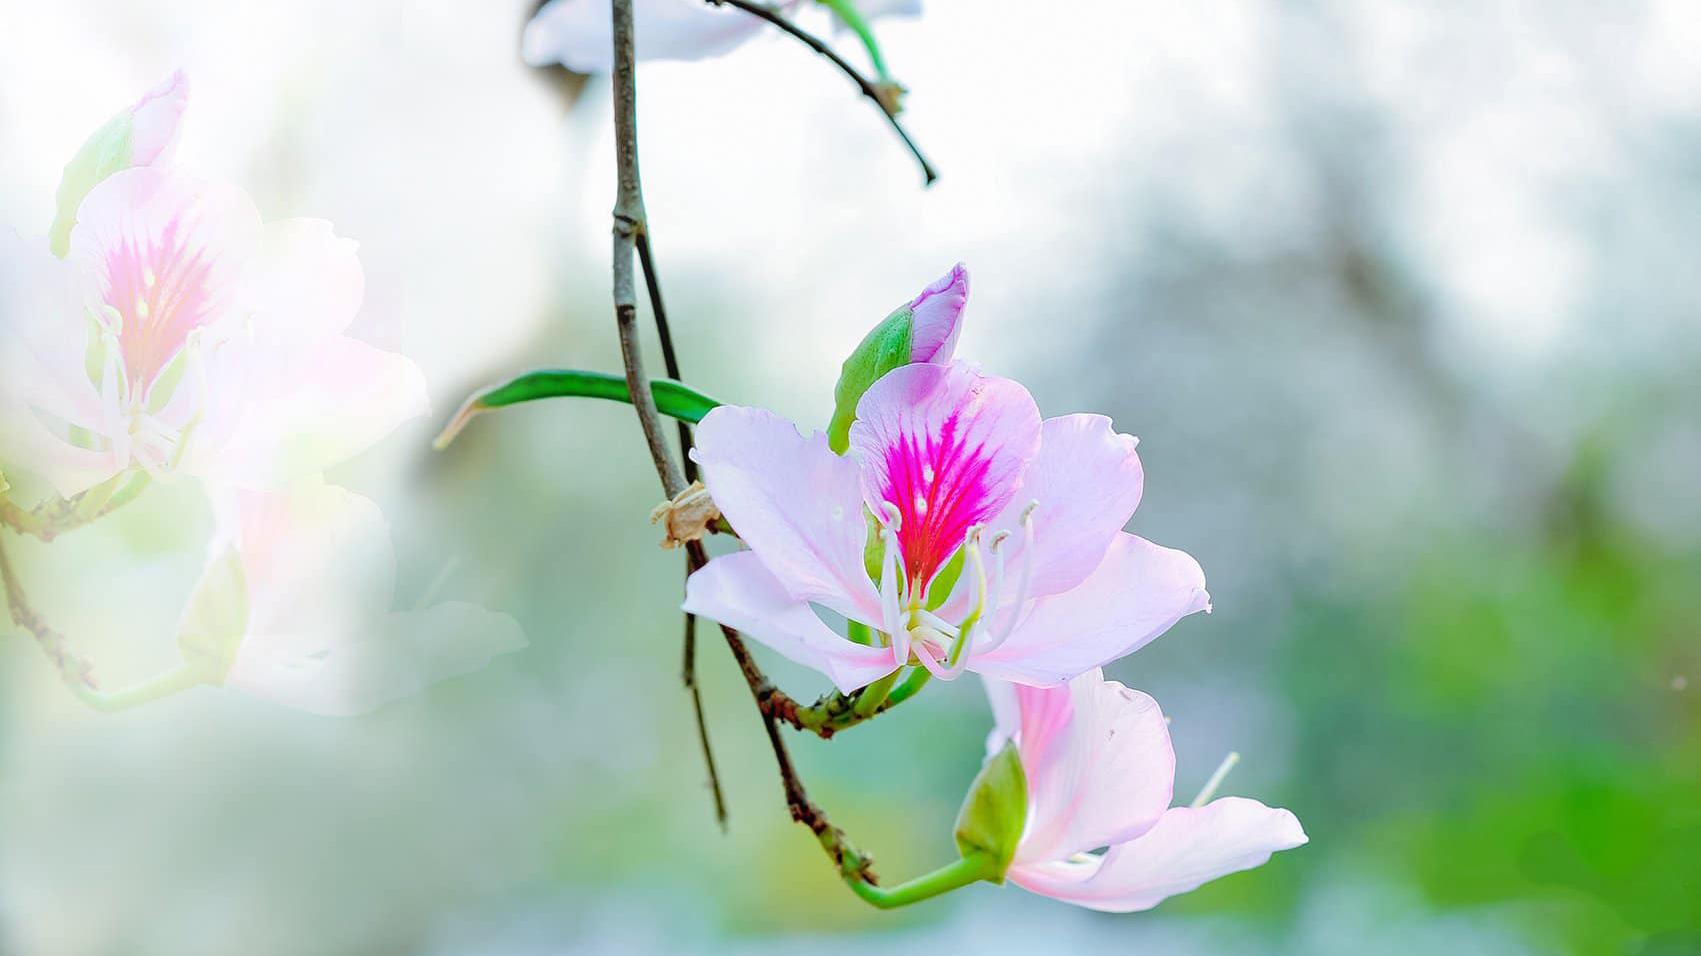 Hoa ban - Loài hoa đi từ huyền thoại vào đời sống - Đài Phát thanh và Truyền hình Điện Biên